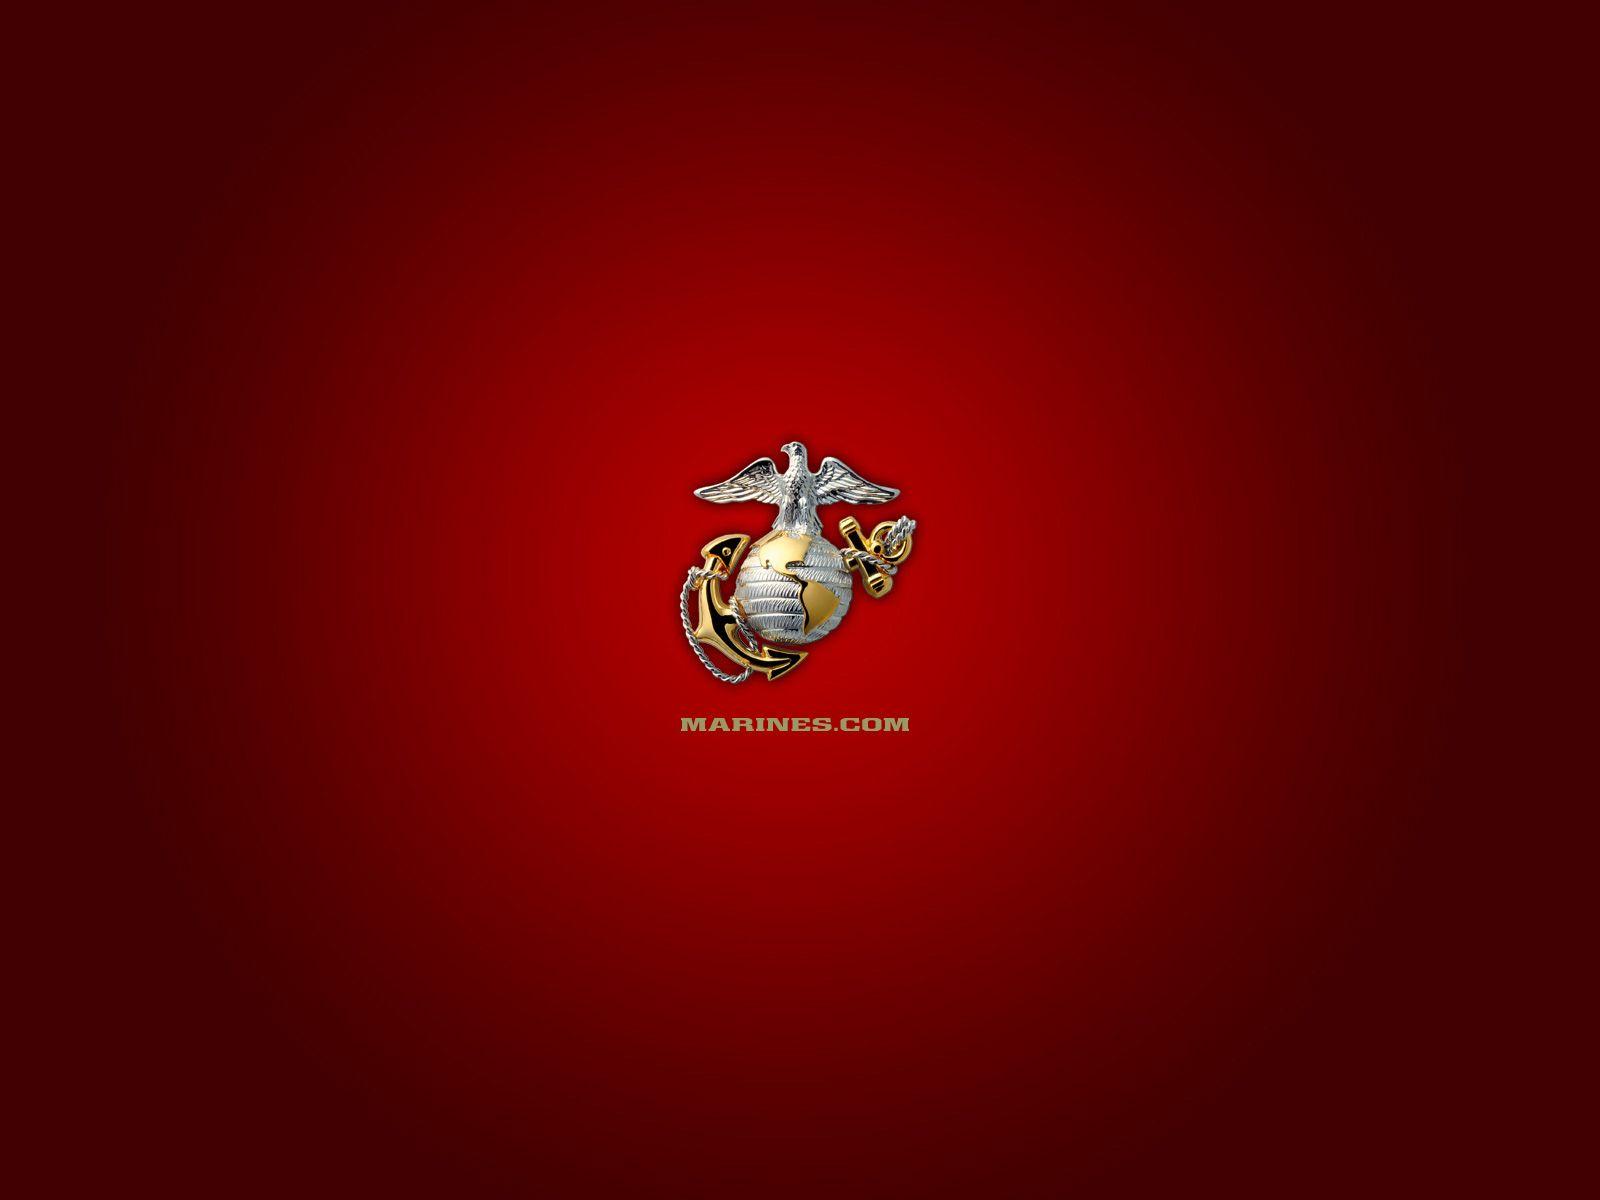 Marines.com Logo - Marines Realm, Semper Fi!